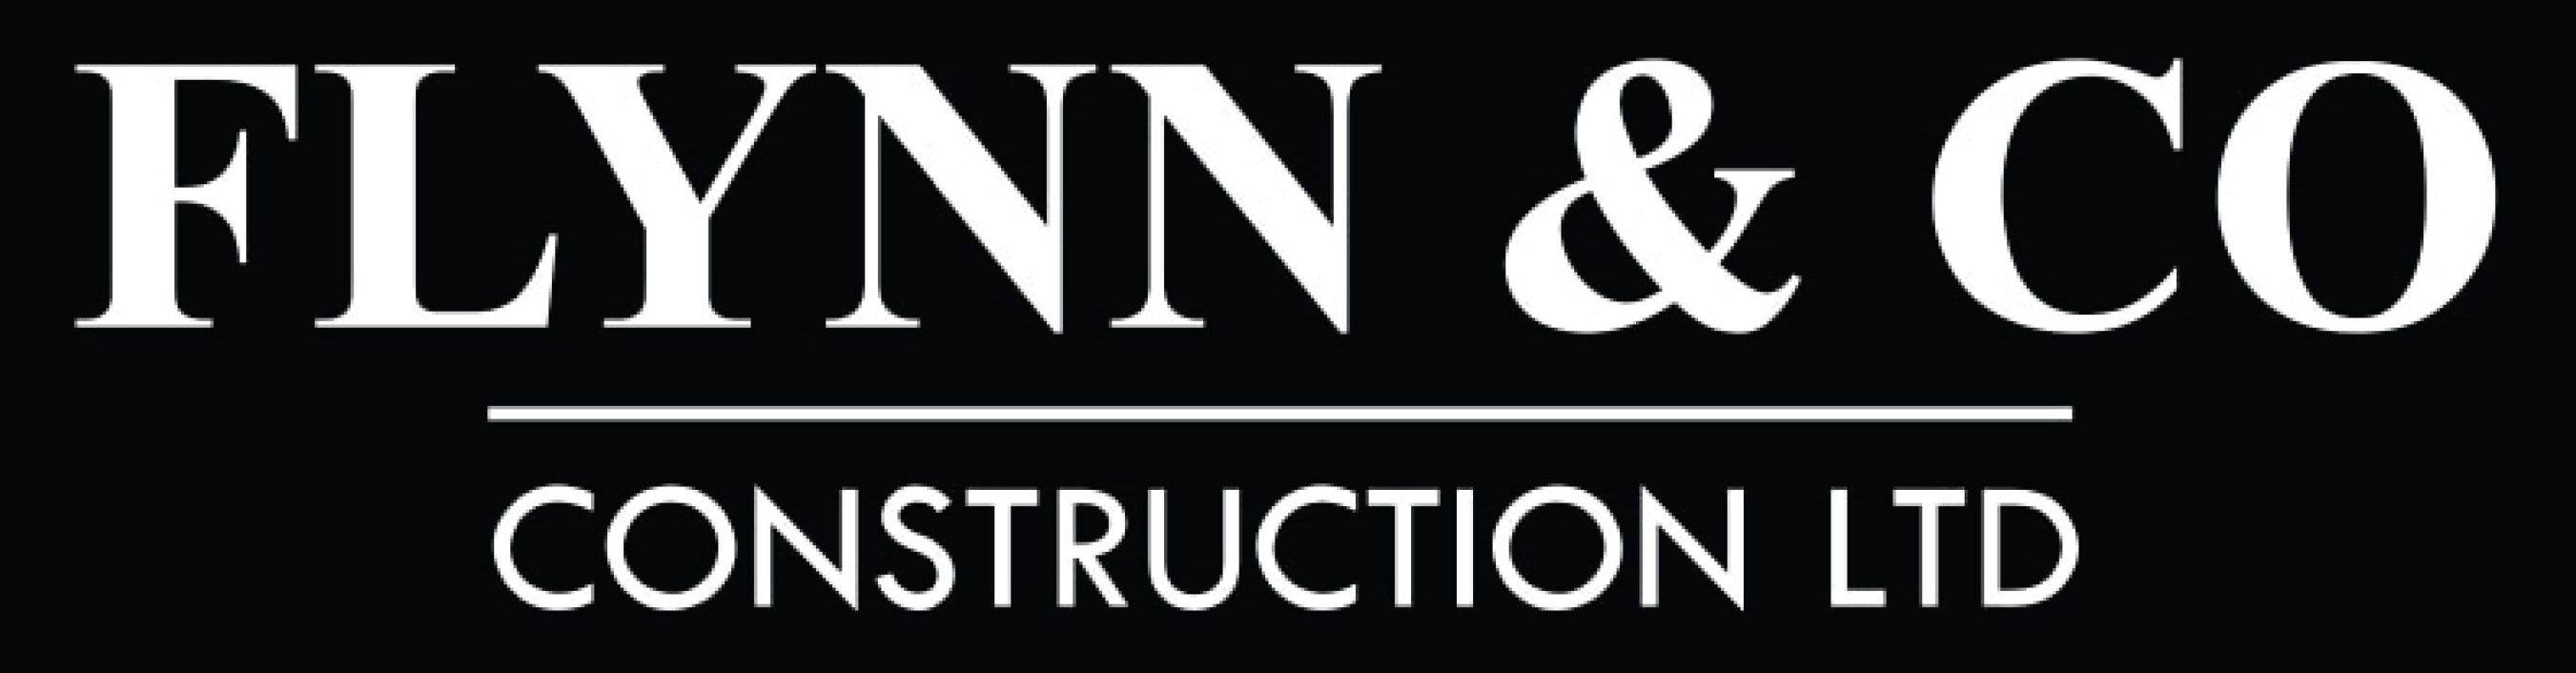 Flynn & Co Construction Ltd